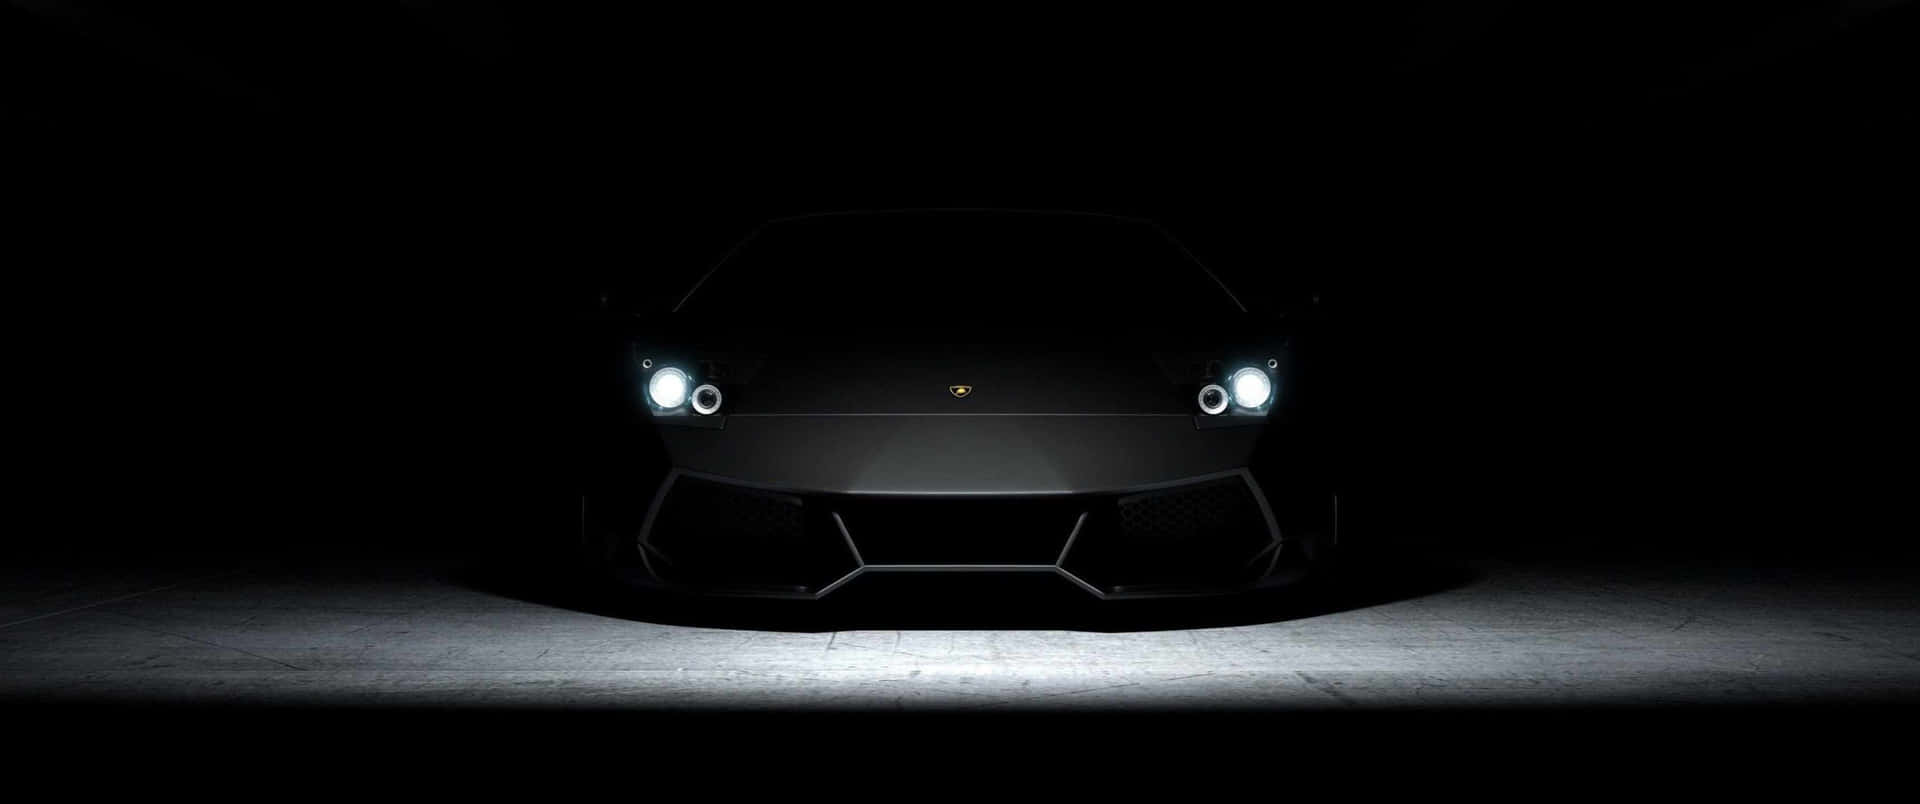 Lamborghinimotorsports - Geschwindigkeit Und Stil In Einem